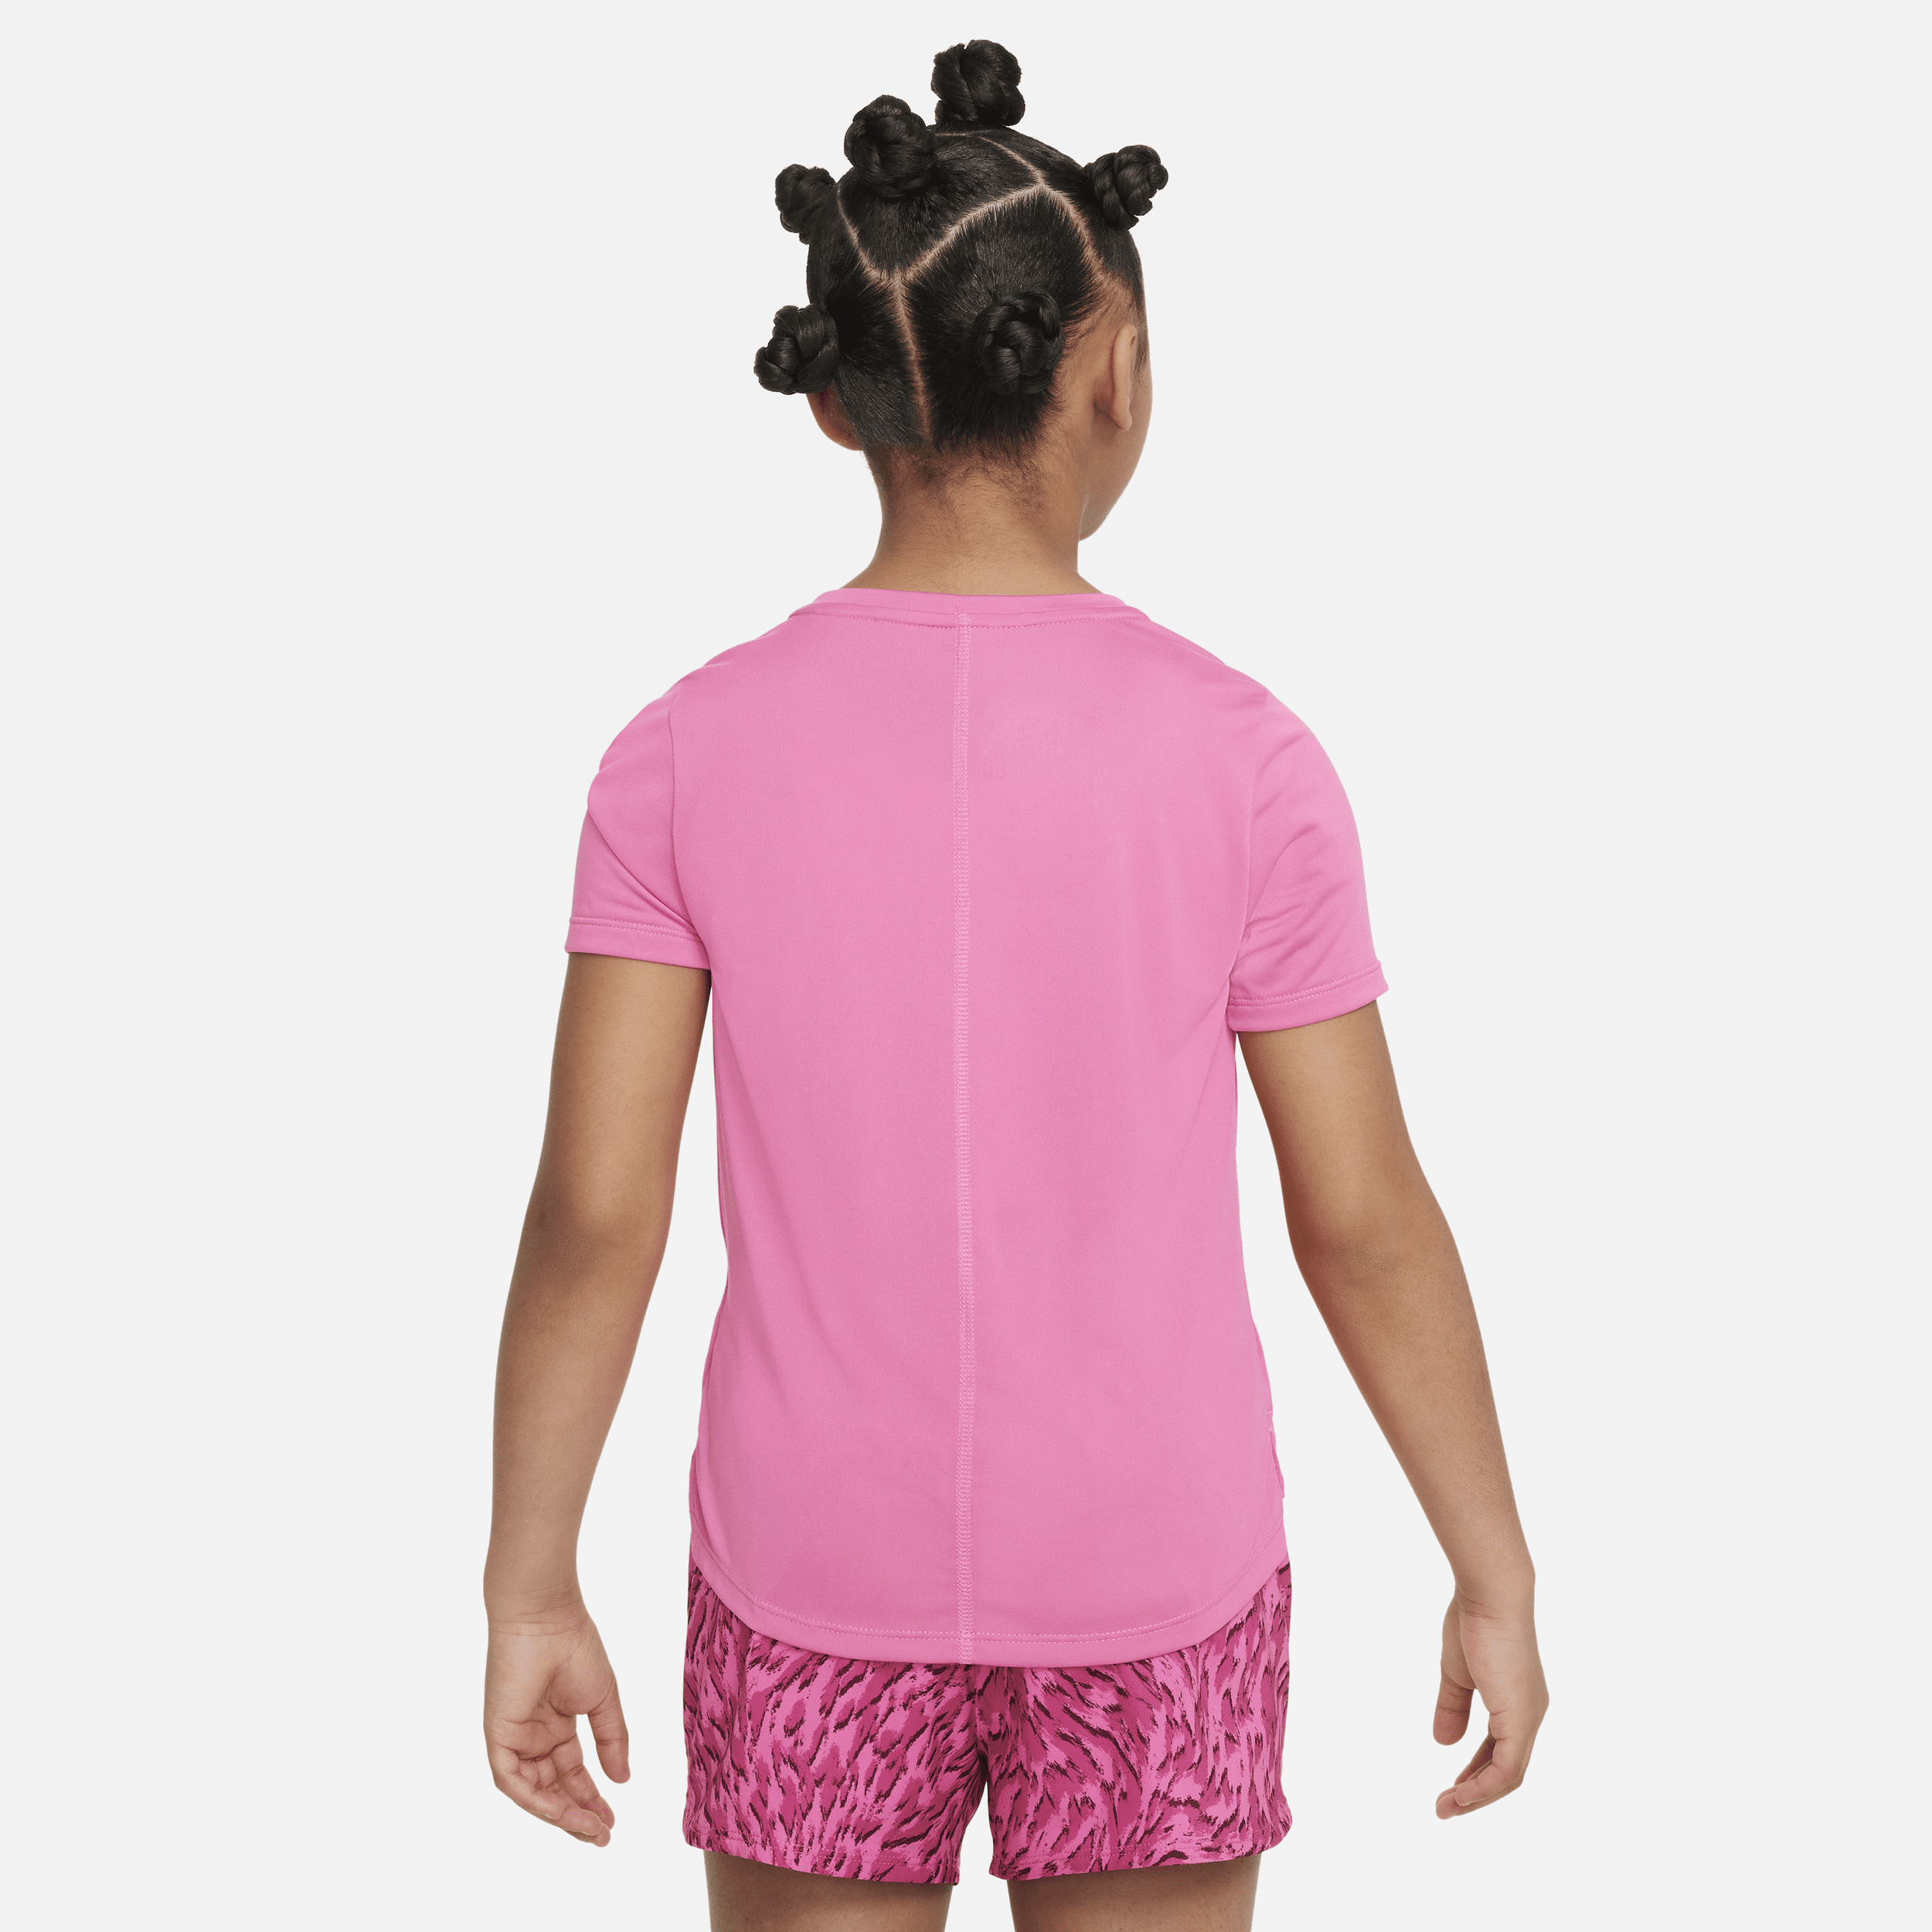 Nike One trainingstop met korte mouwen voor meisjes Roze